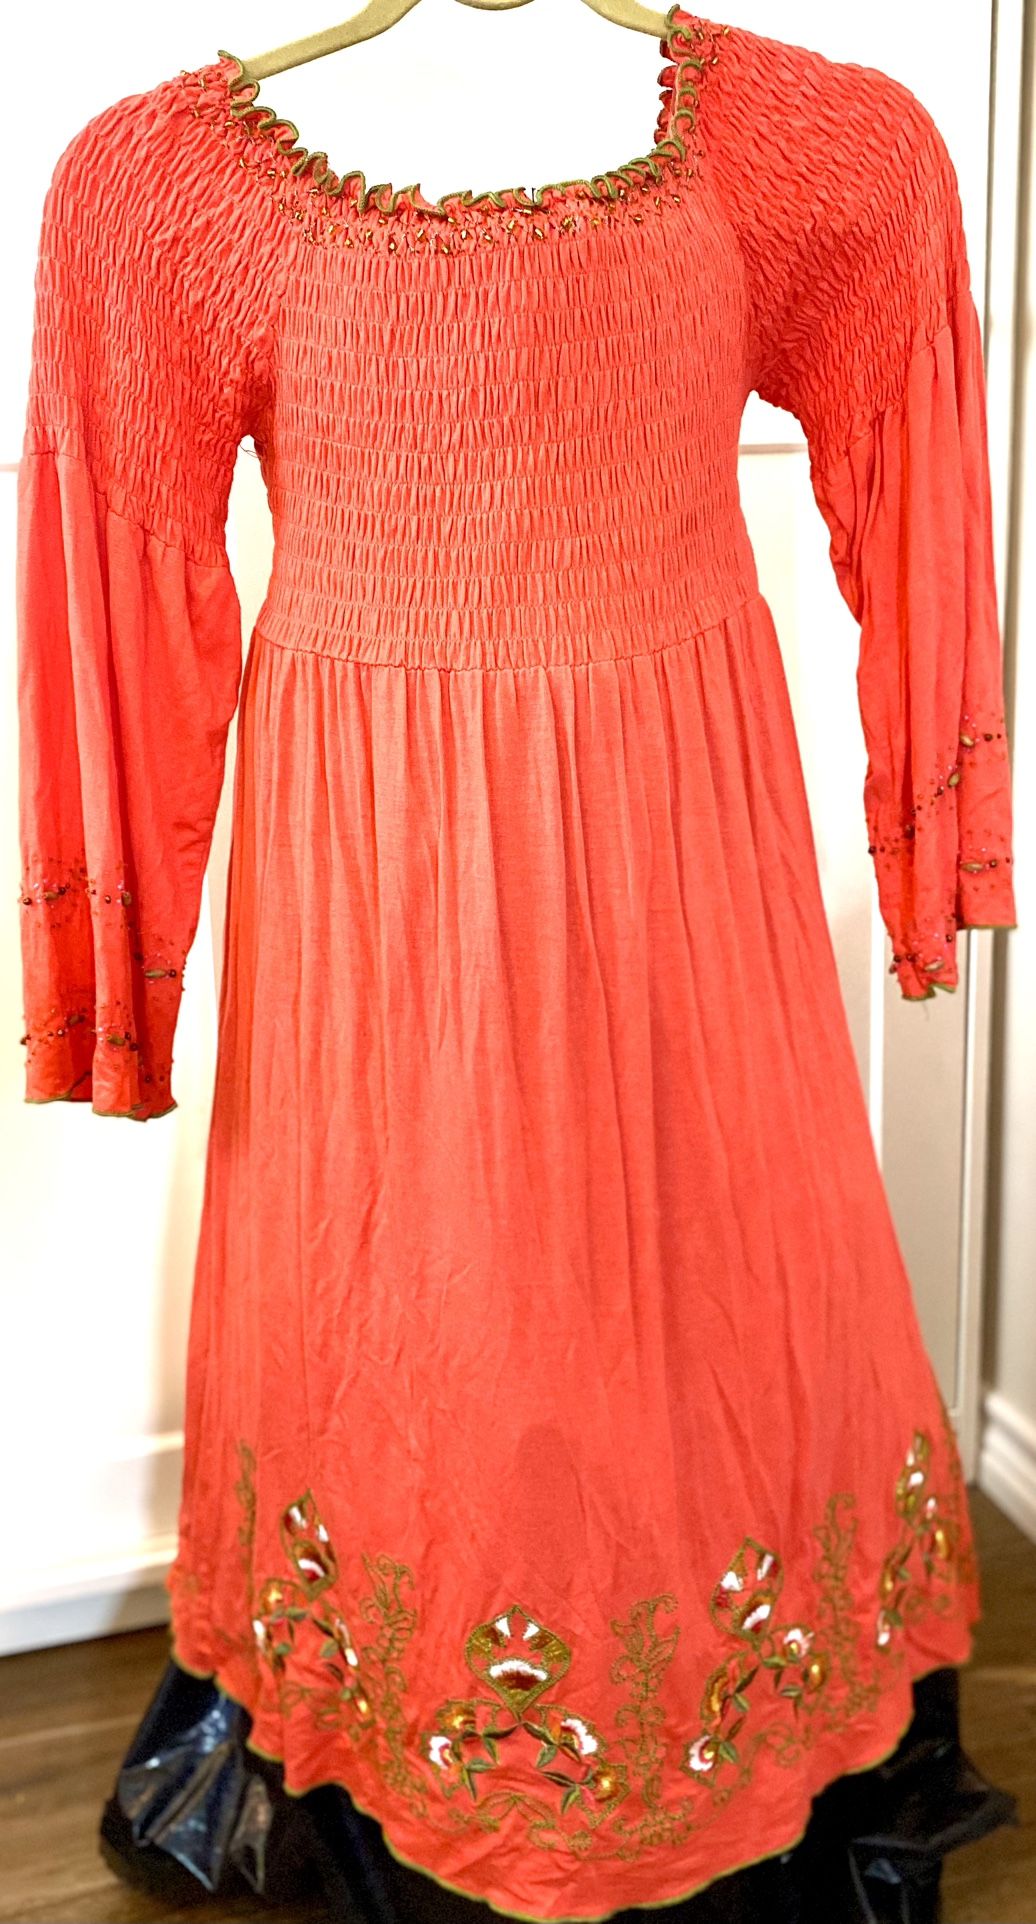 Size 8 Dress By Urban Mangoz